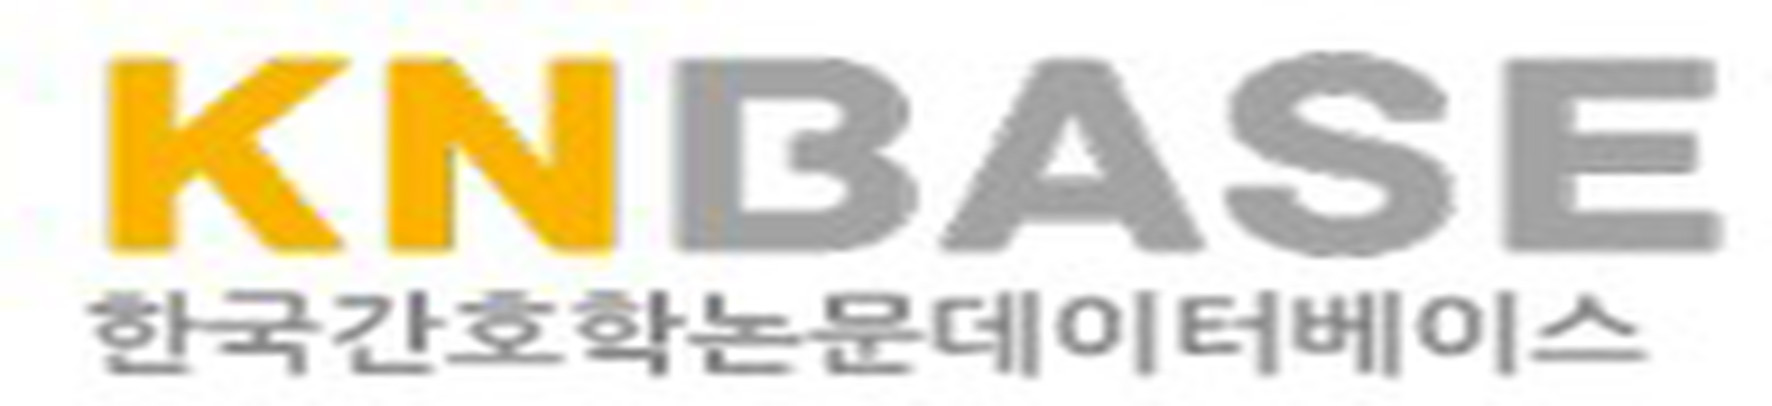 한국간호학논문데이터베이스